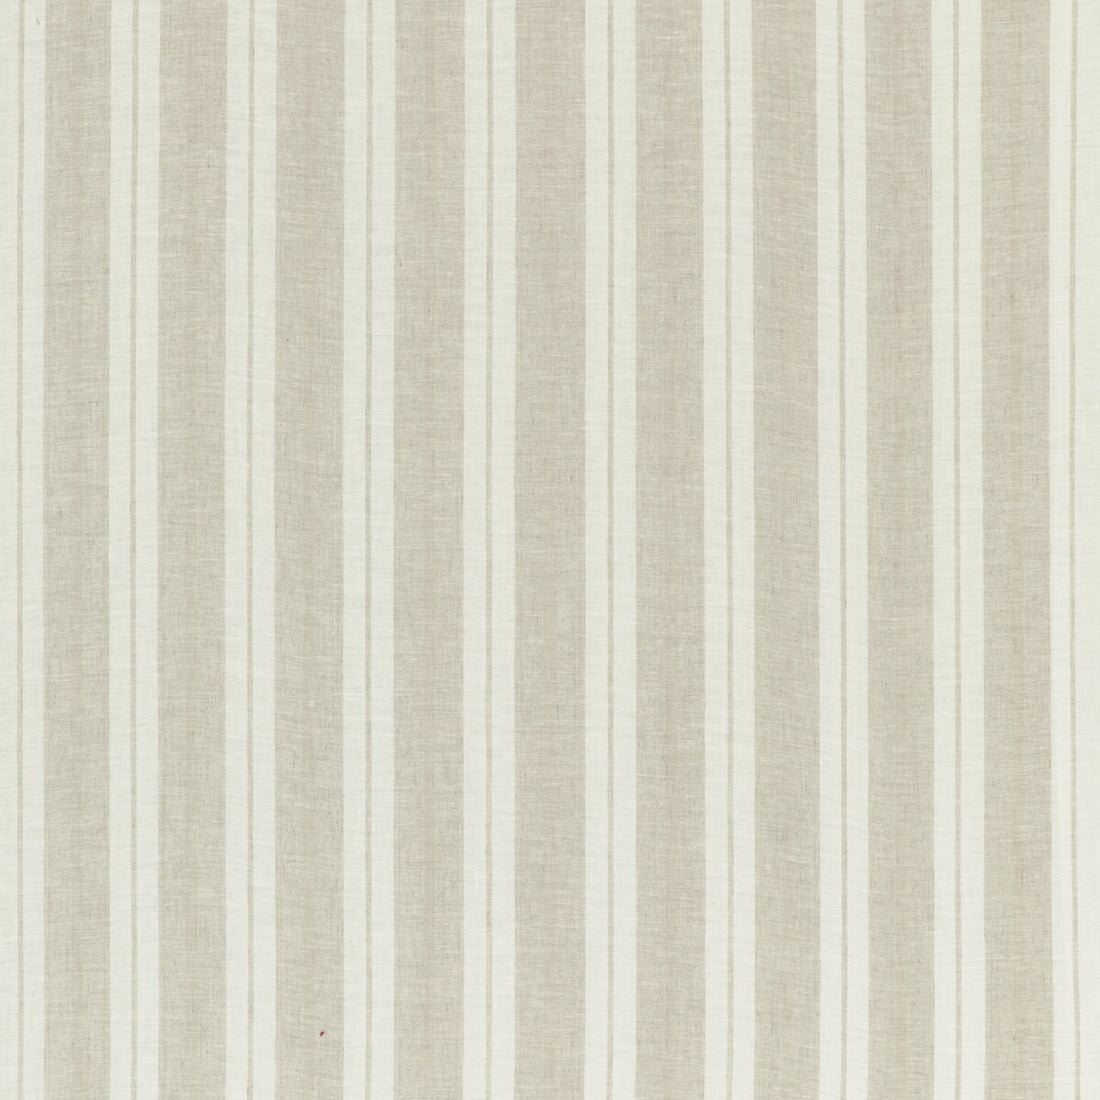 Kravet Design fabric in 4841-16 color - pattern 4841.16.0 - by Kravet Design